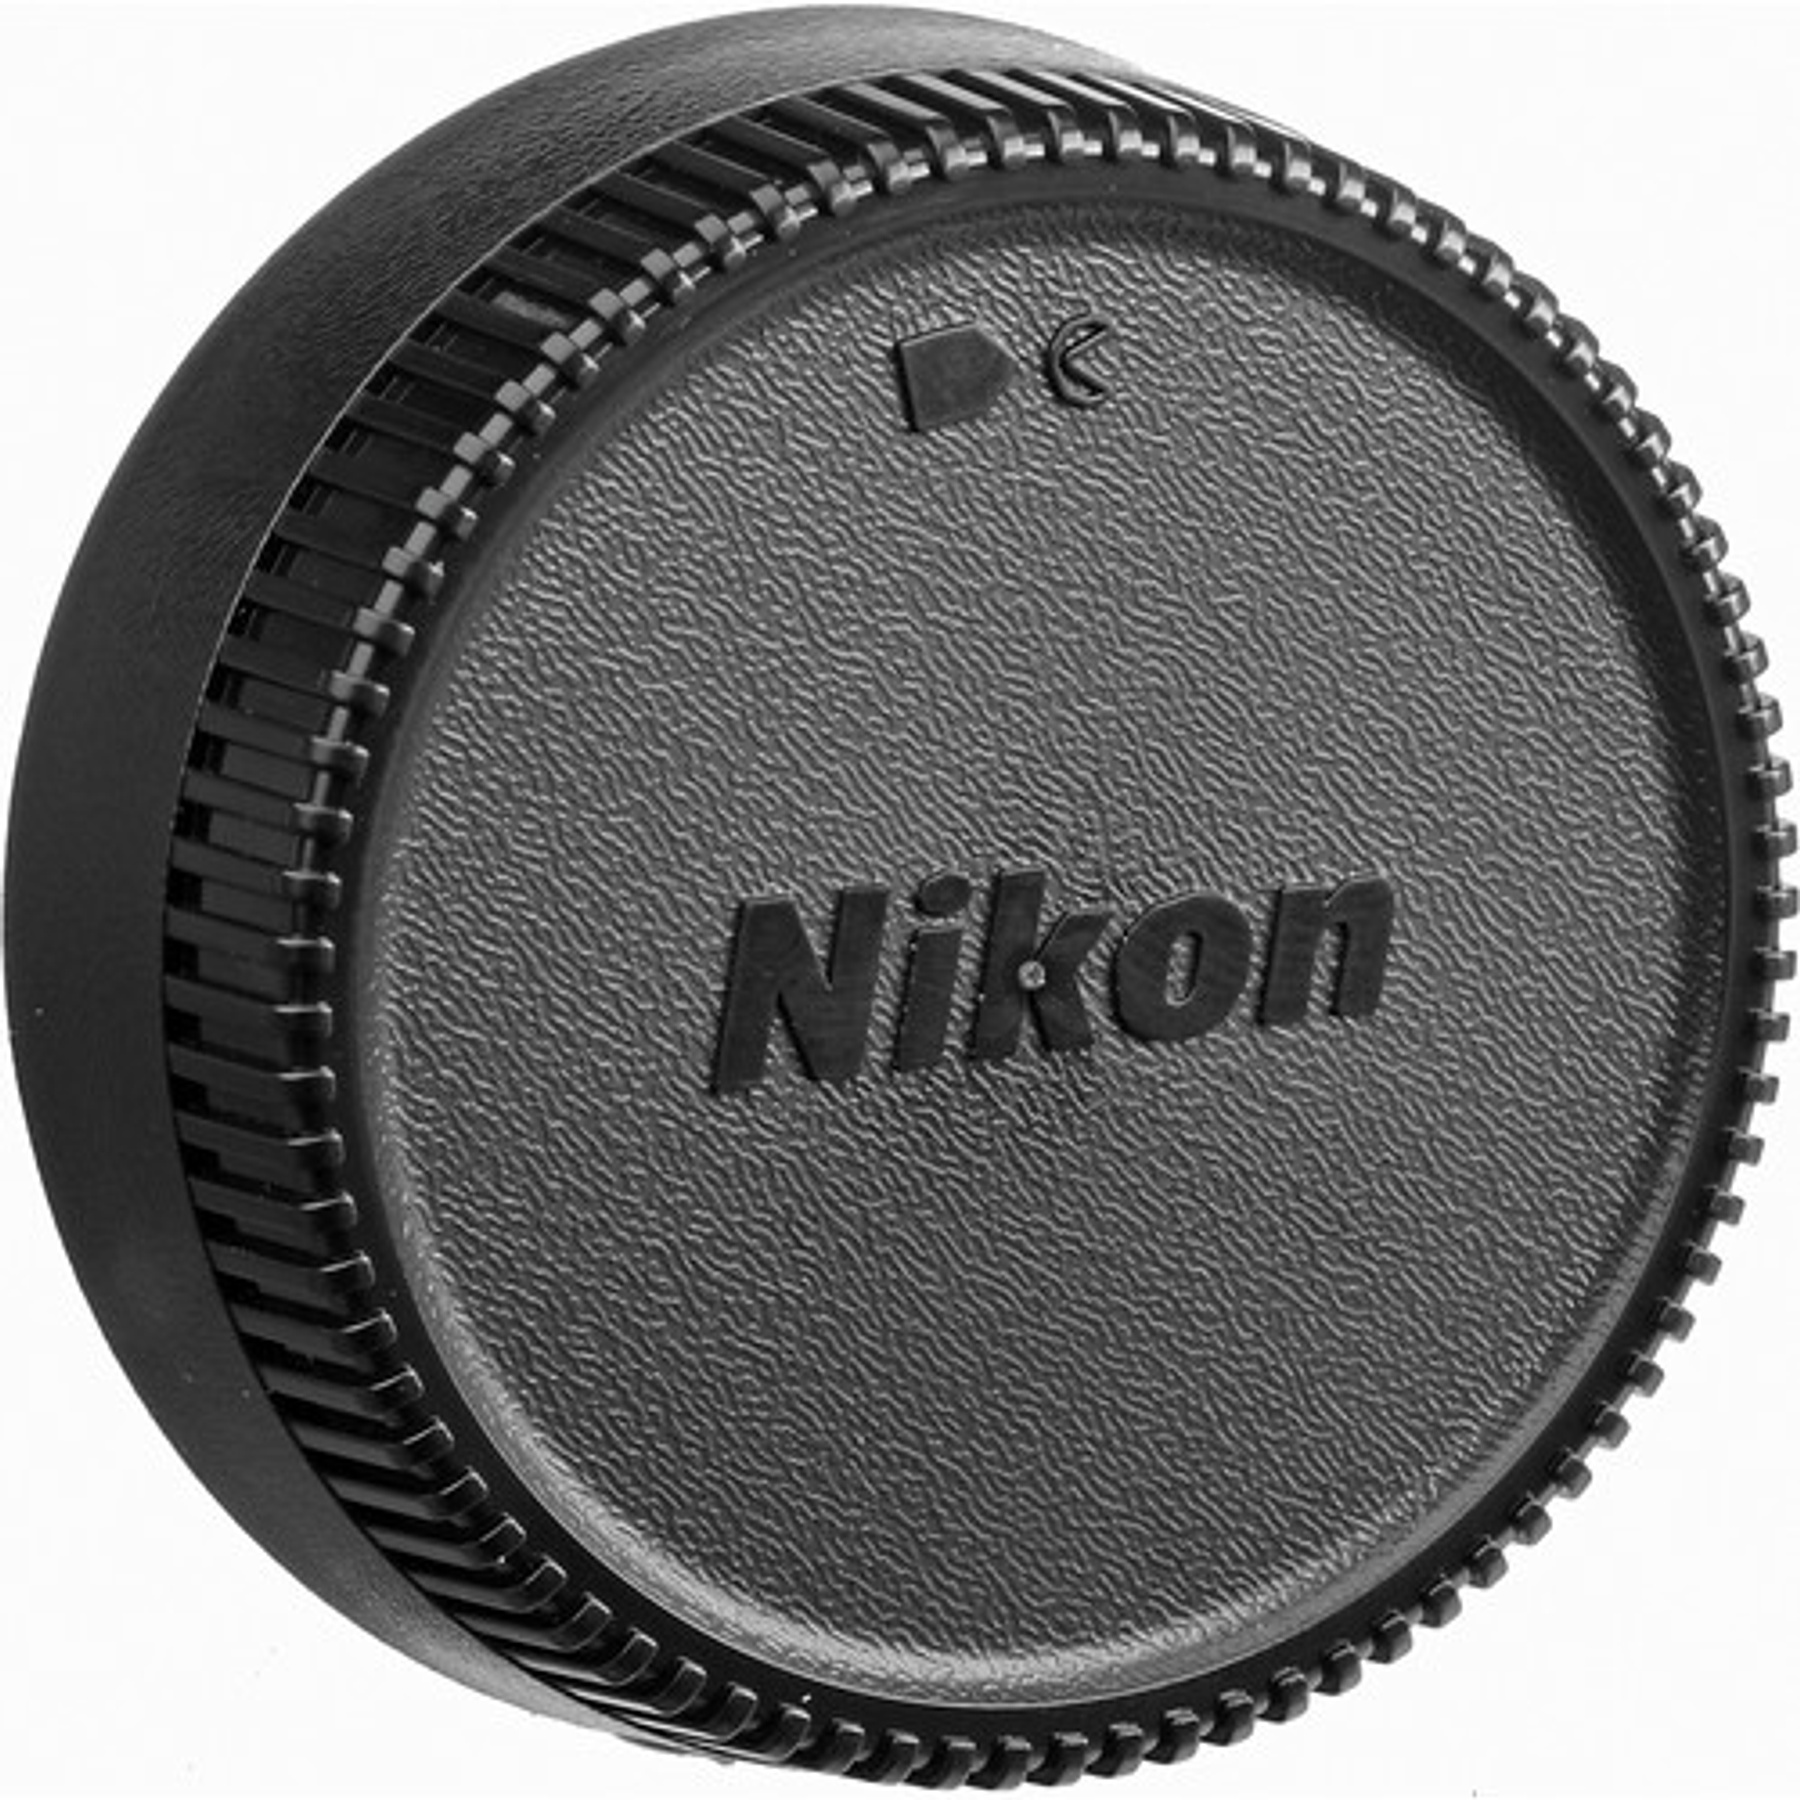 Nikon F DC 105mm f2.0D